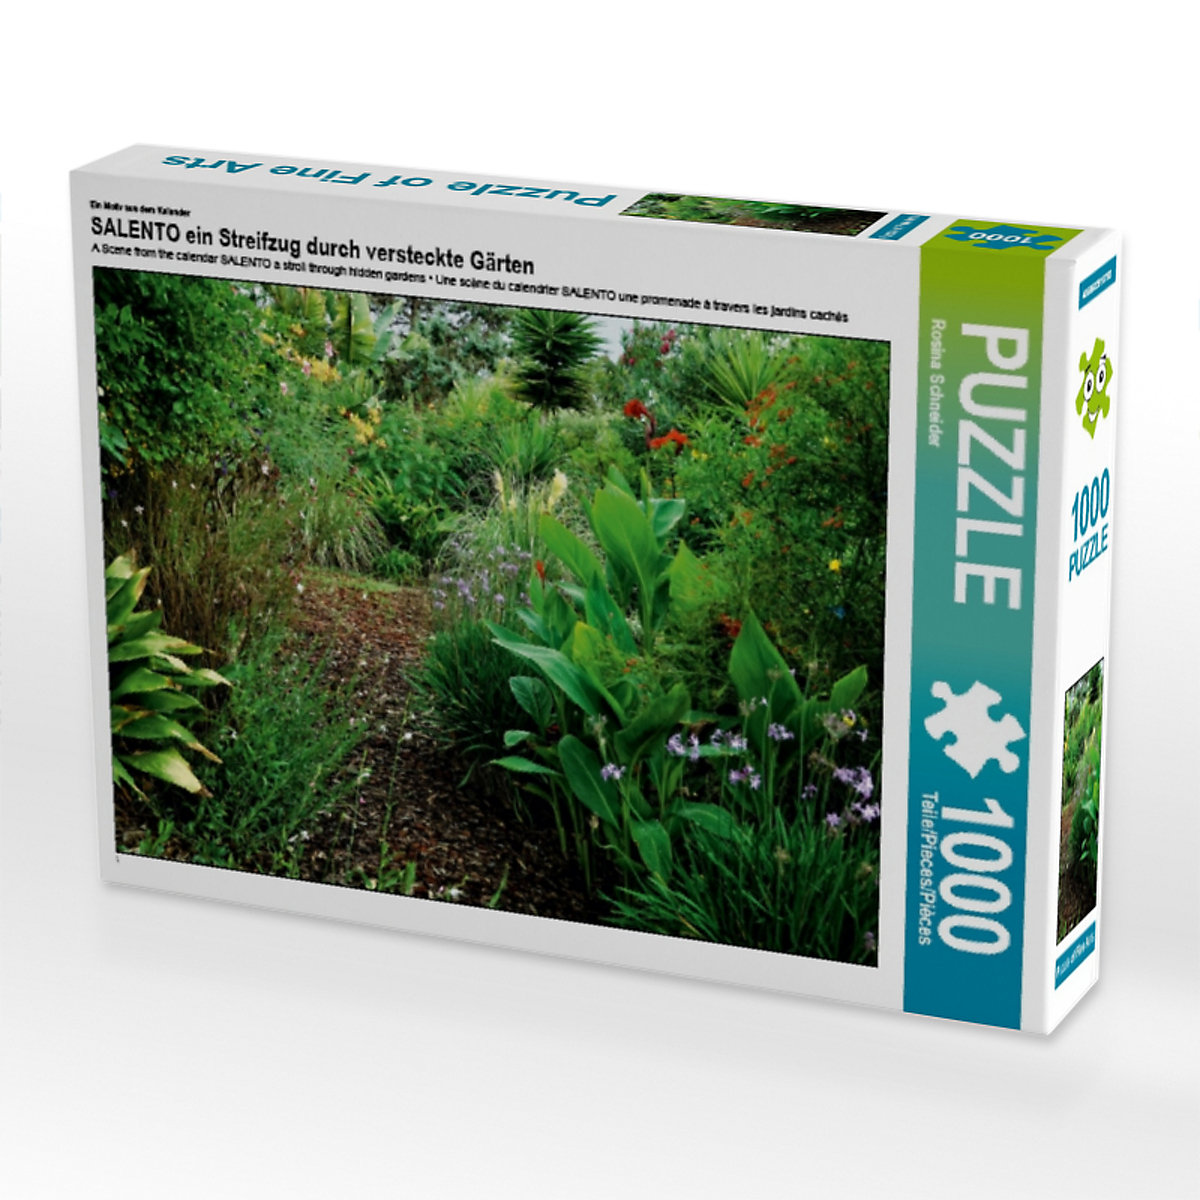 CALVENDO® Puzzle CALVENDO Puzzle SALENTO ein Streifzug durch versteckte Gärten 1000 Teile Foto-Puzzle für glückliche Stunden